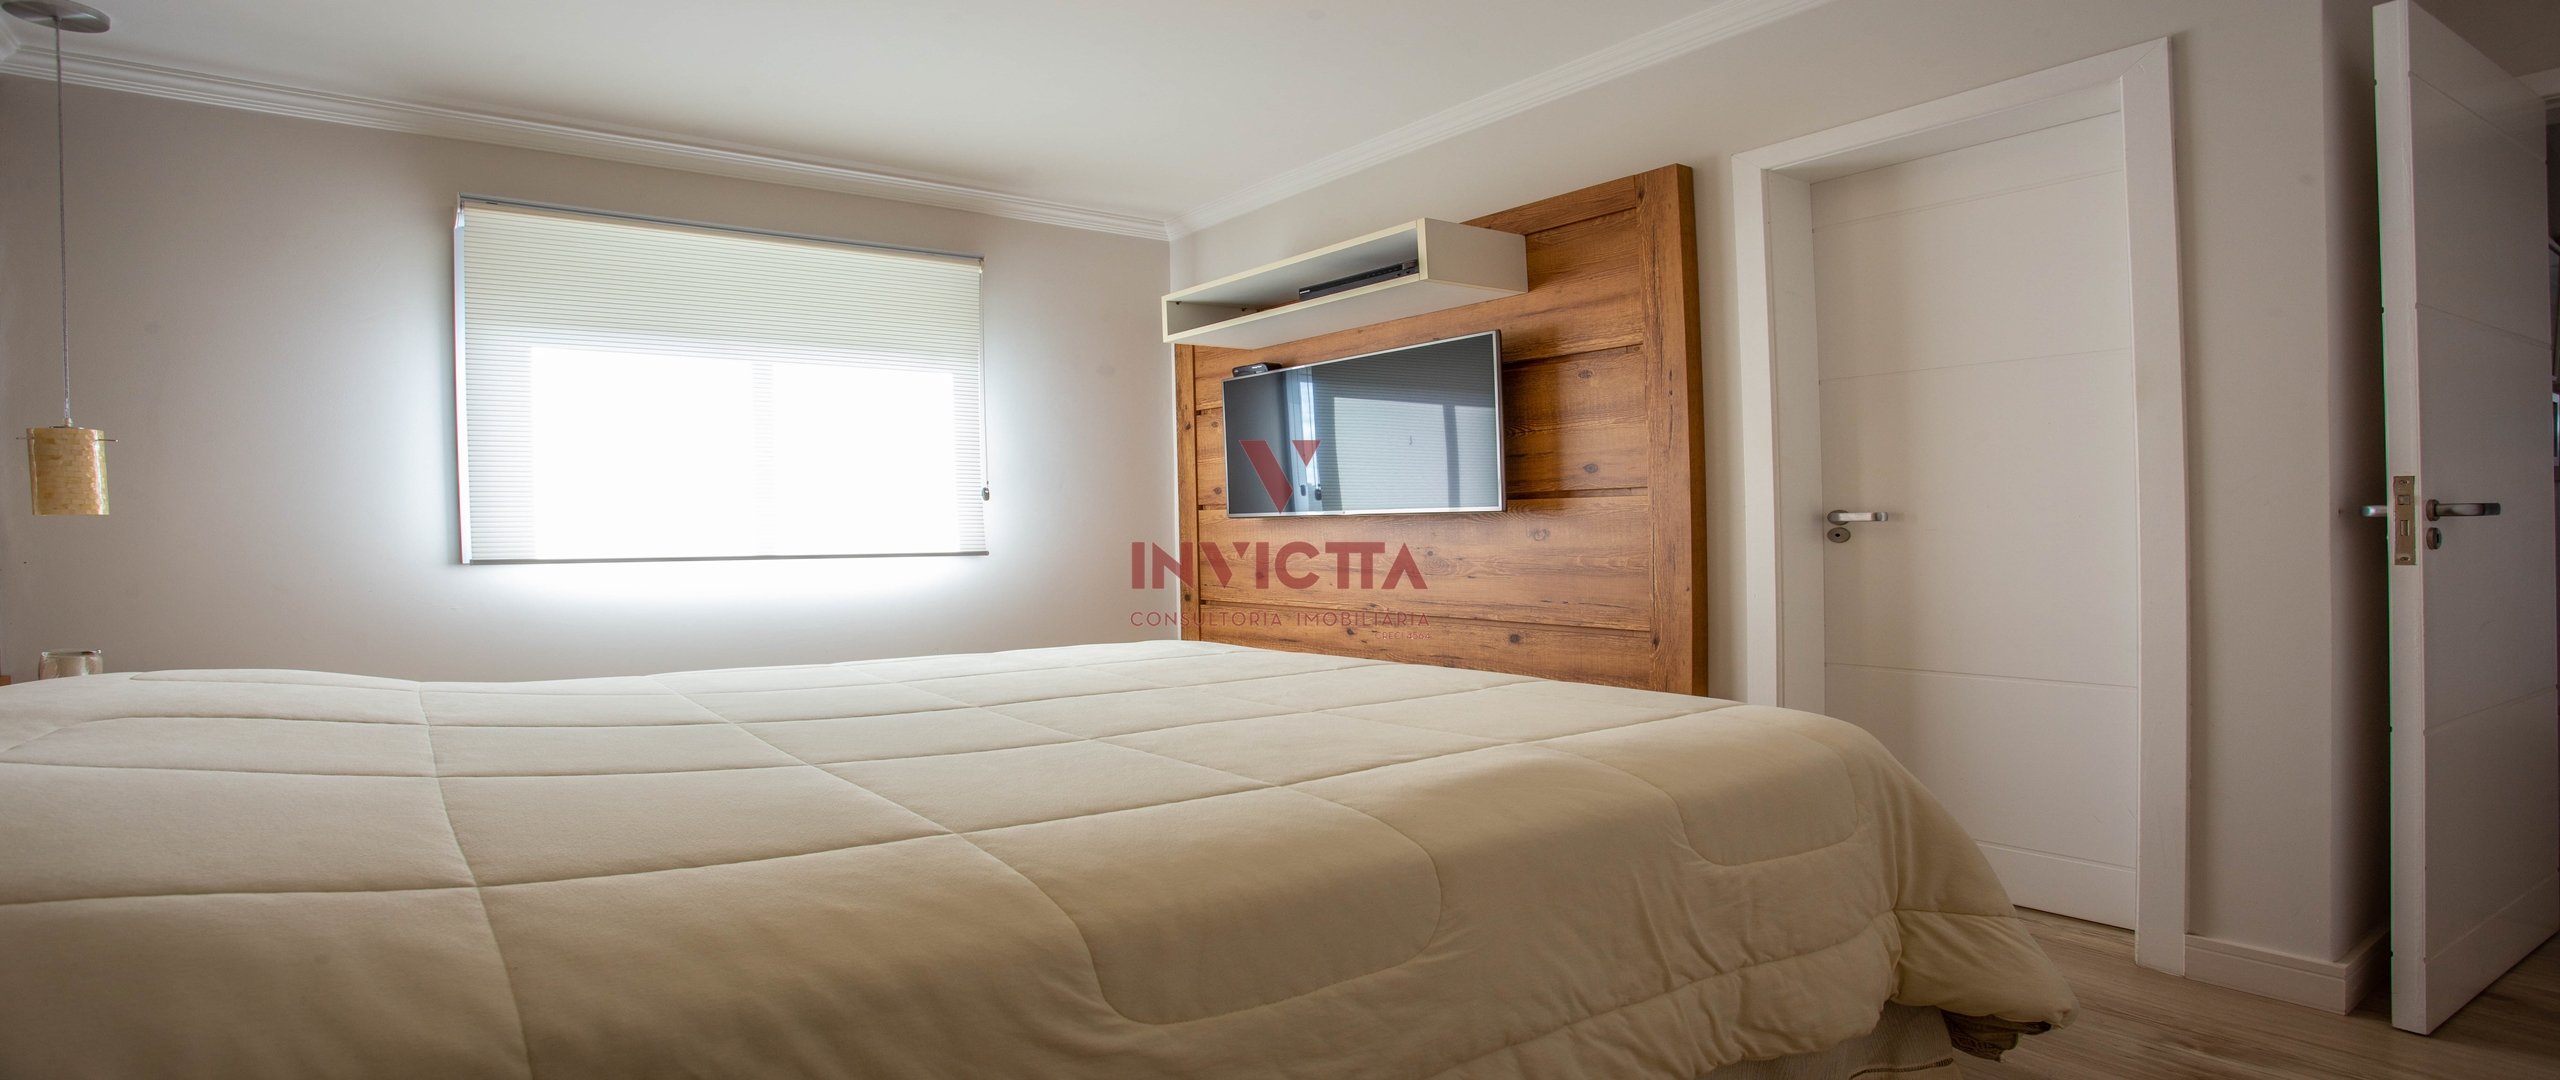 foto 15 do imóvel: apartamento a venda em Curitiba referência: AA 1307